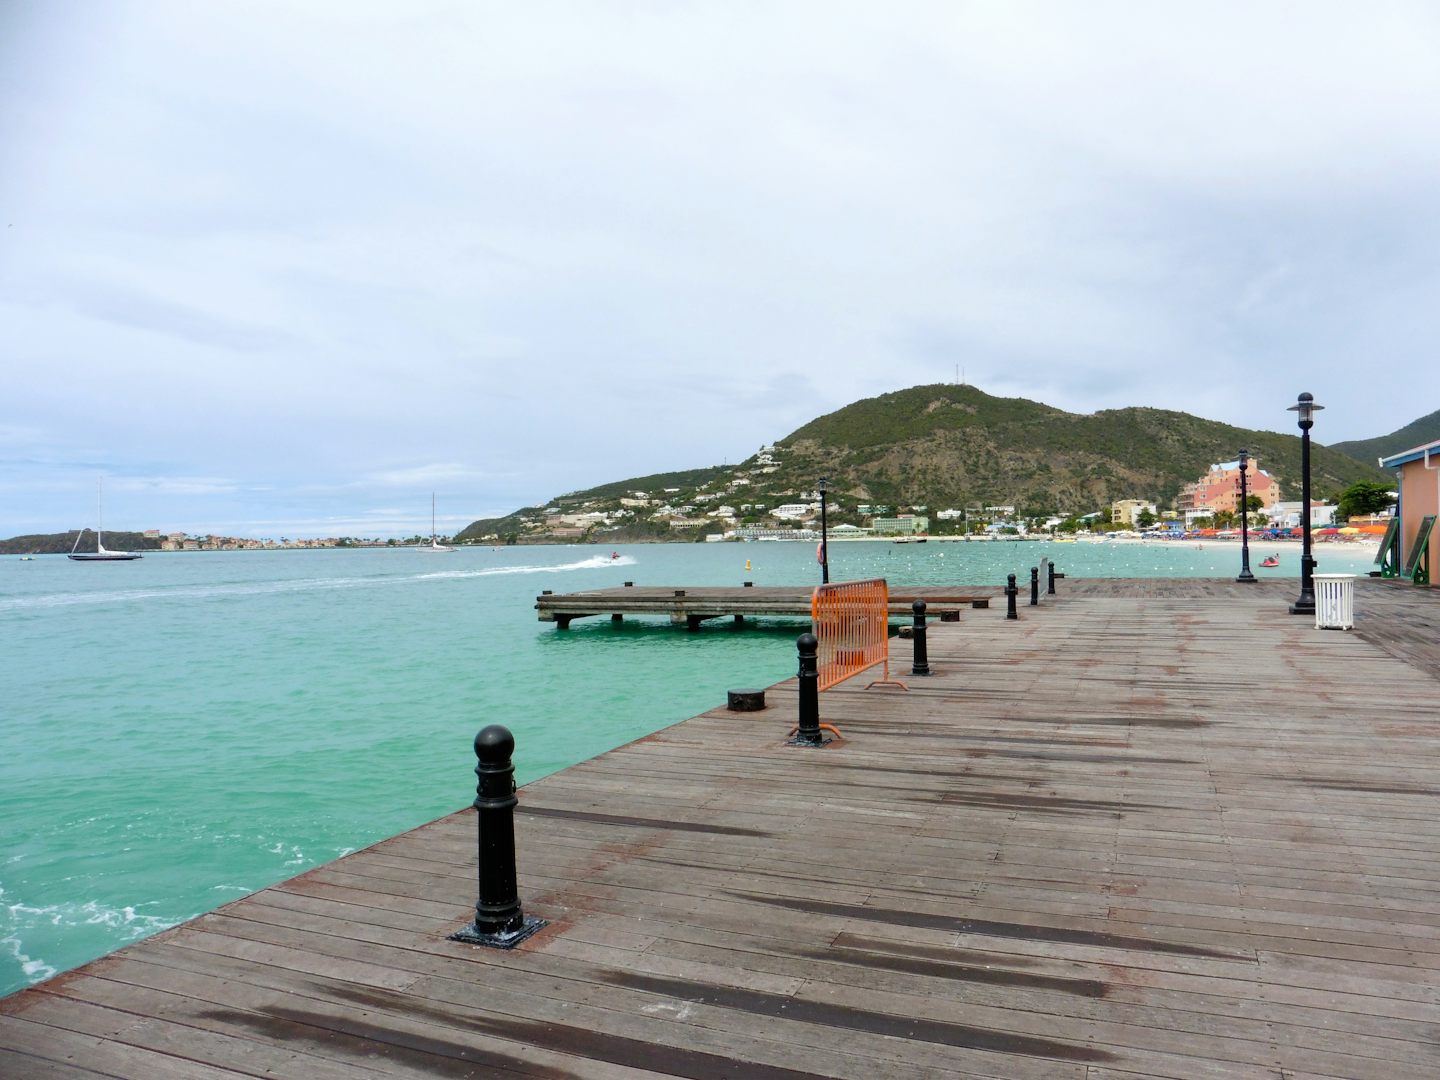 Pier & Boardwalk St Maarten